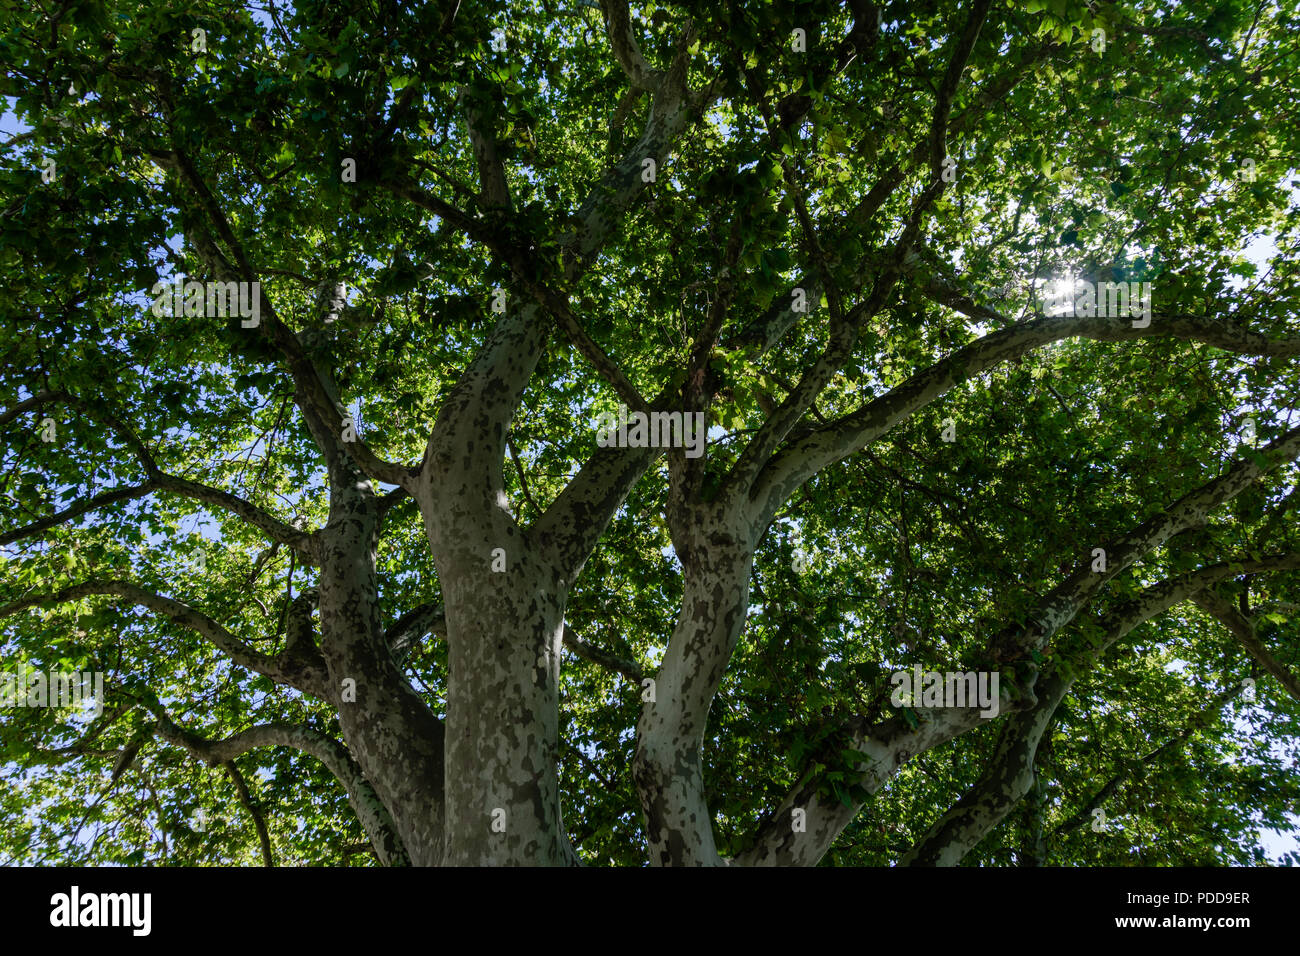 Nahaufnahme des alten und grossen Baum, von unten in die Baumkrone mit grünen Blättern. Blauer Himmel ist durch die Äste sichtbar. Stockfoto